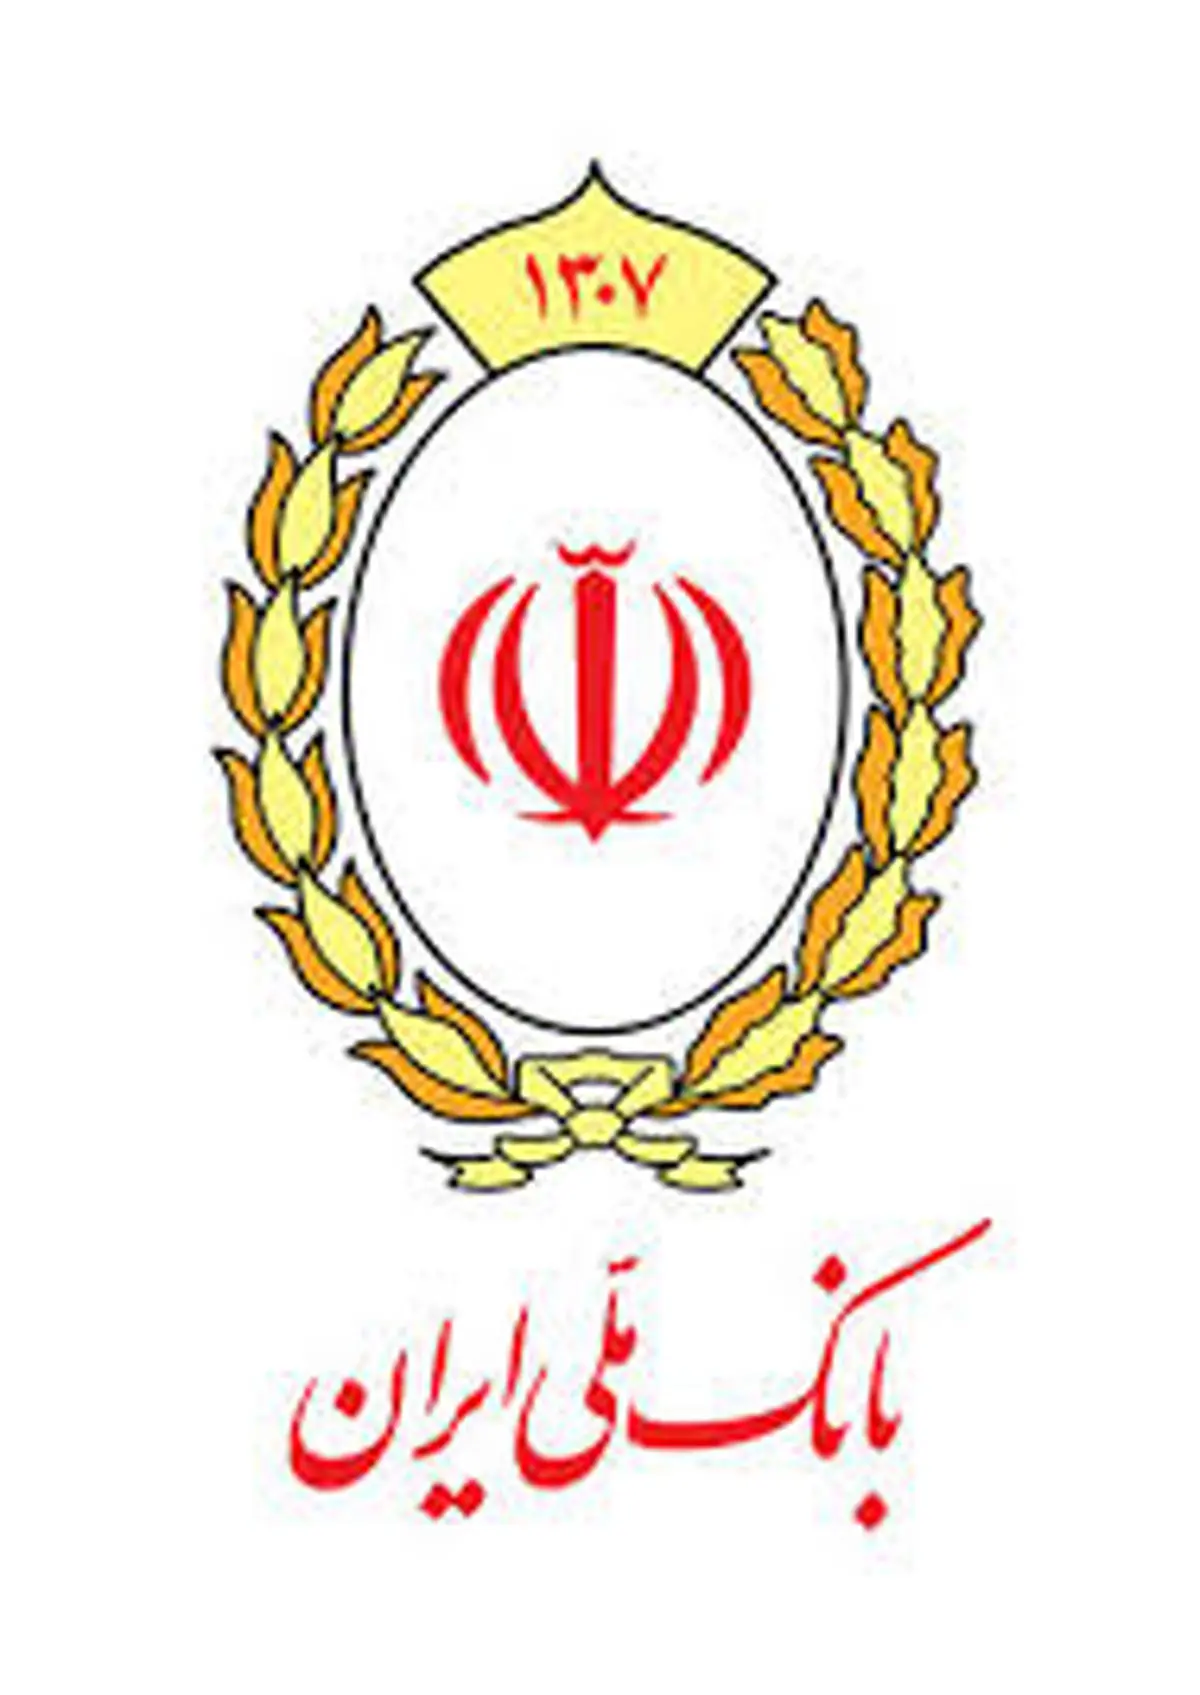 اشتغال هفت هزار نفر در نیمه نخست امسال با تسهیلات بانک ملی ایران

